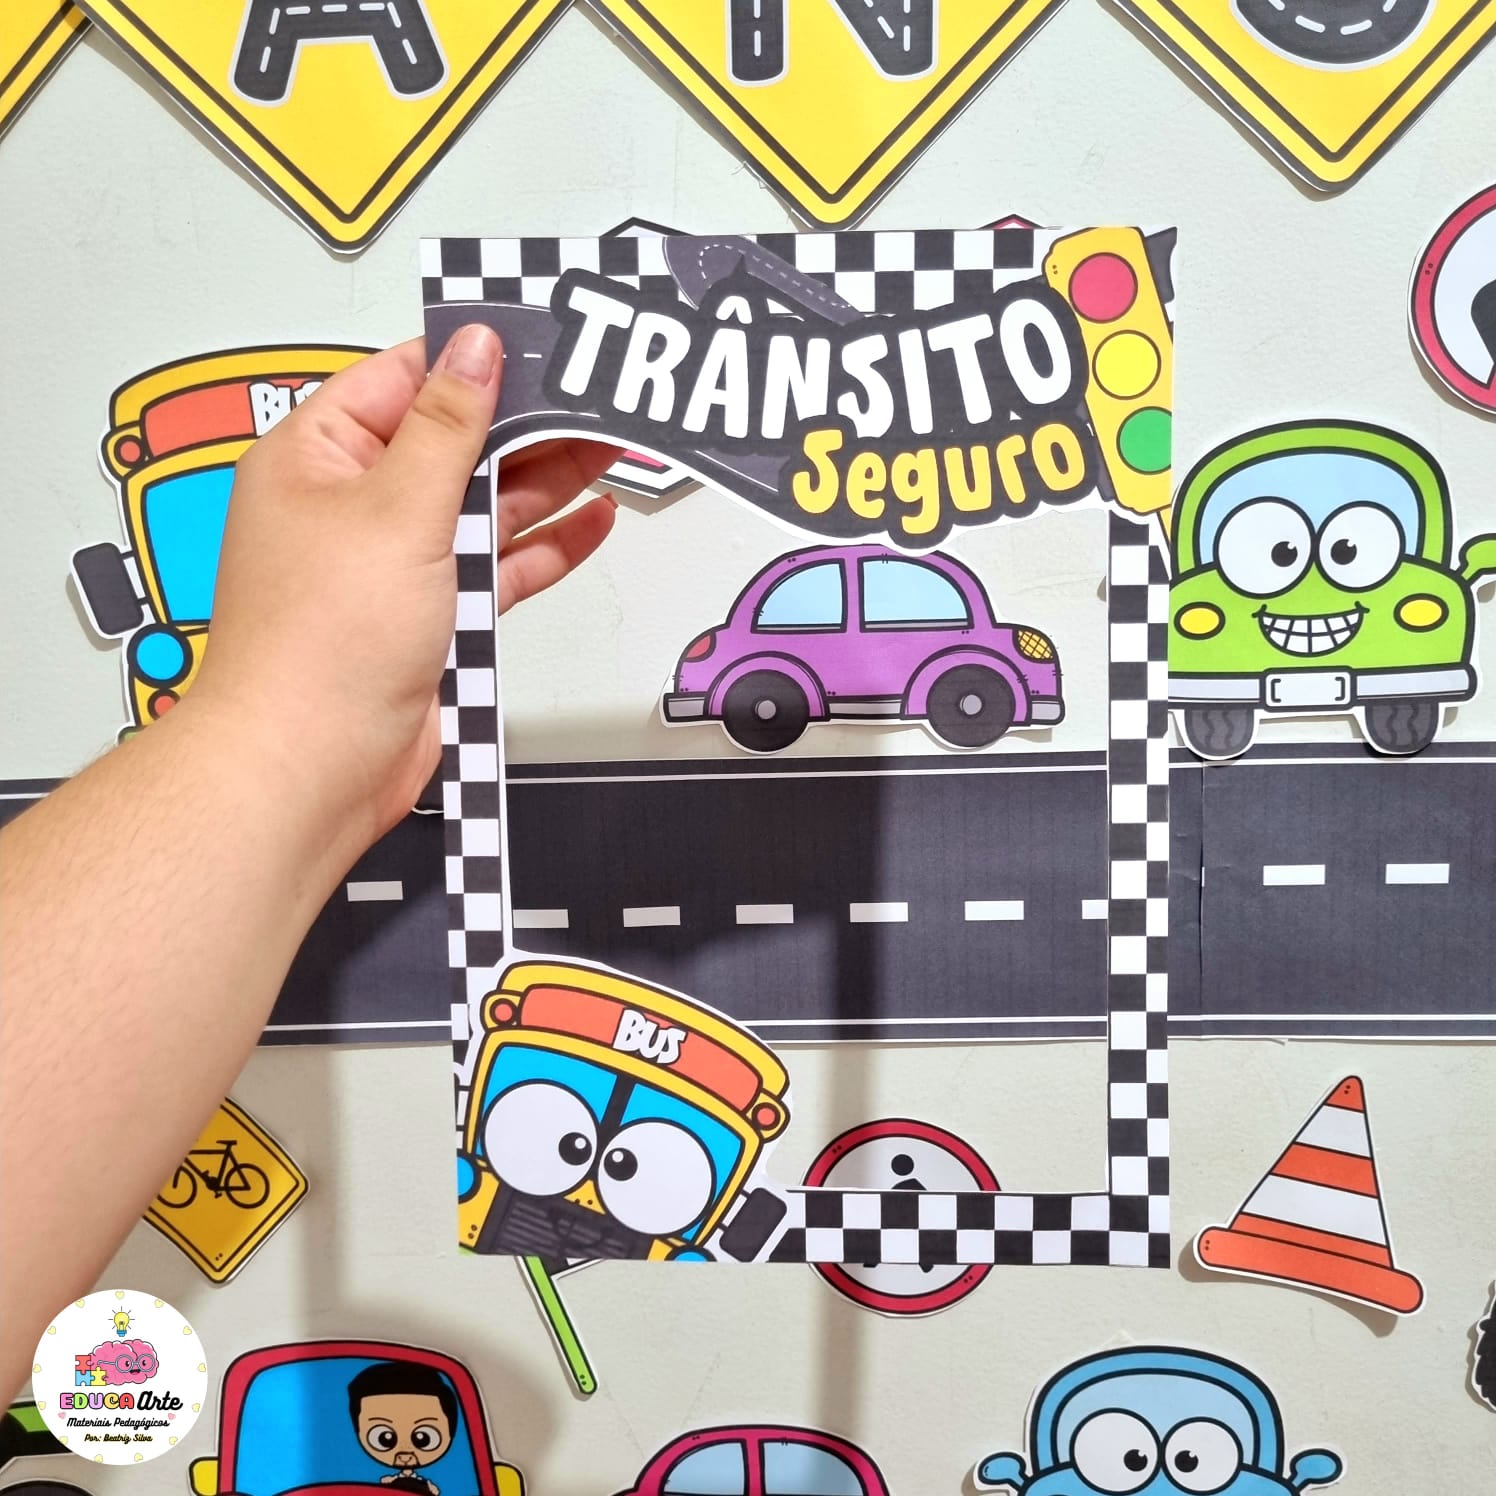 Pedagógiccos: Trânsito - jogos  Educação para o transito, Semana